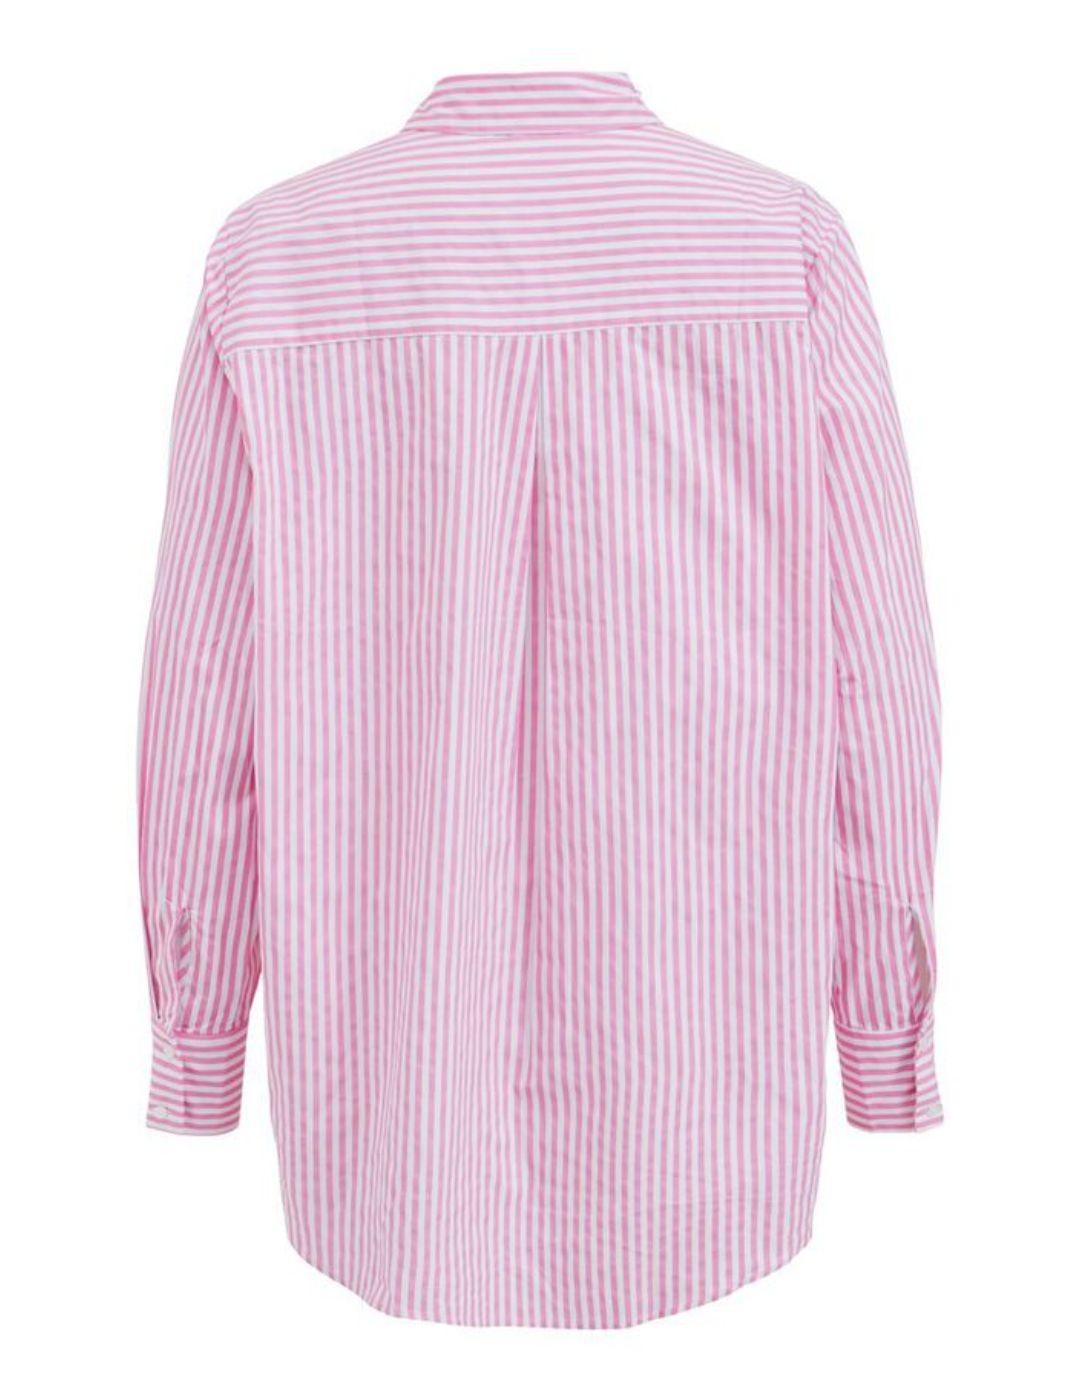 Camisa Vila a rayas rosa y blanca para mujer-a